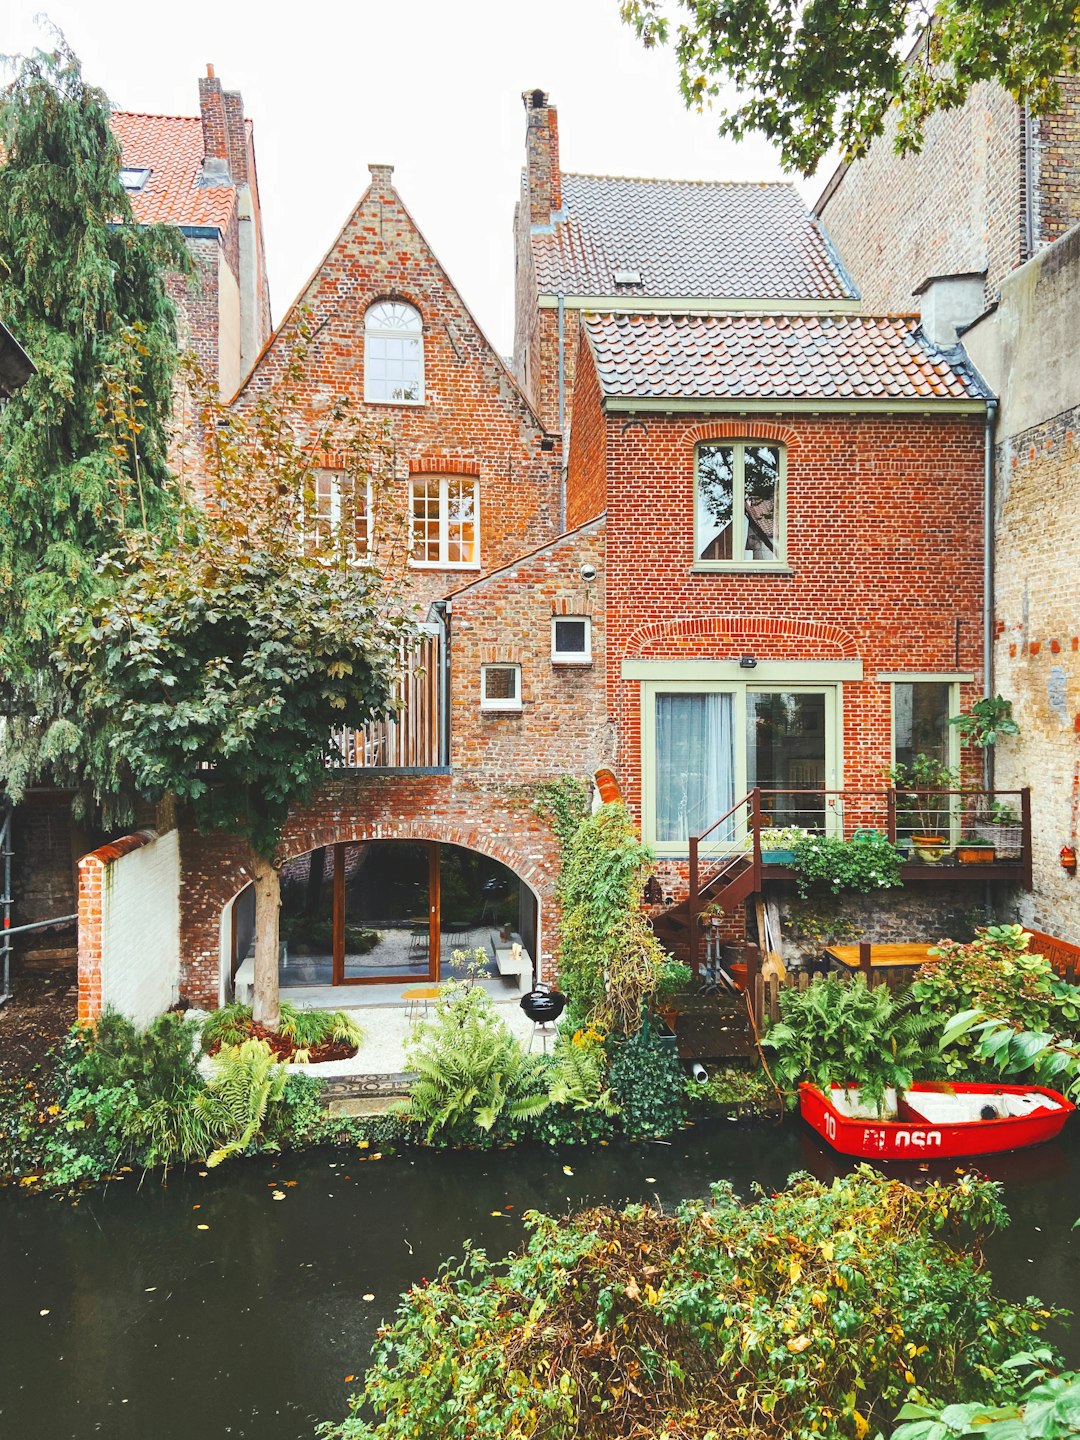 Waterway photo spot Bruges Blankenberge